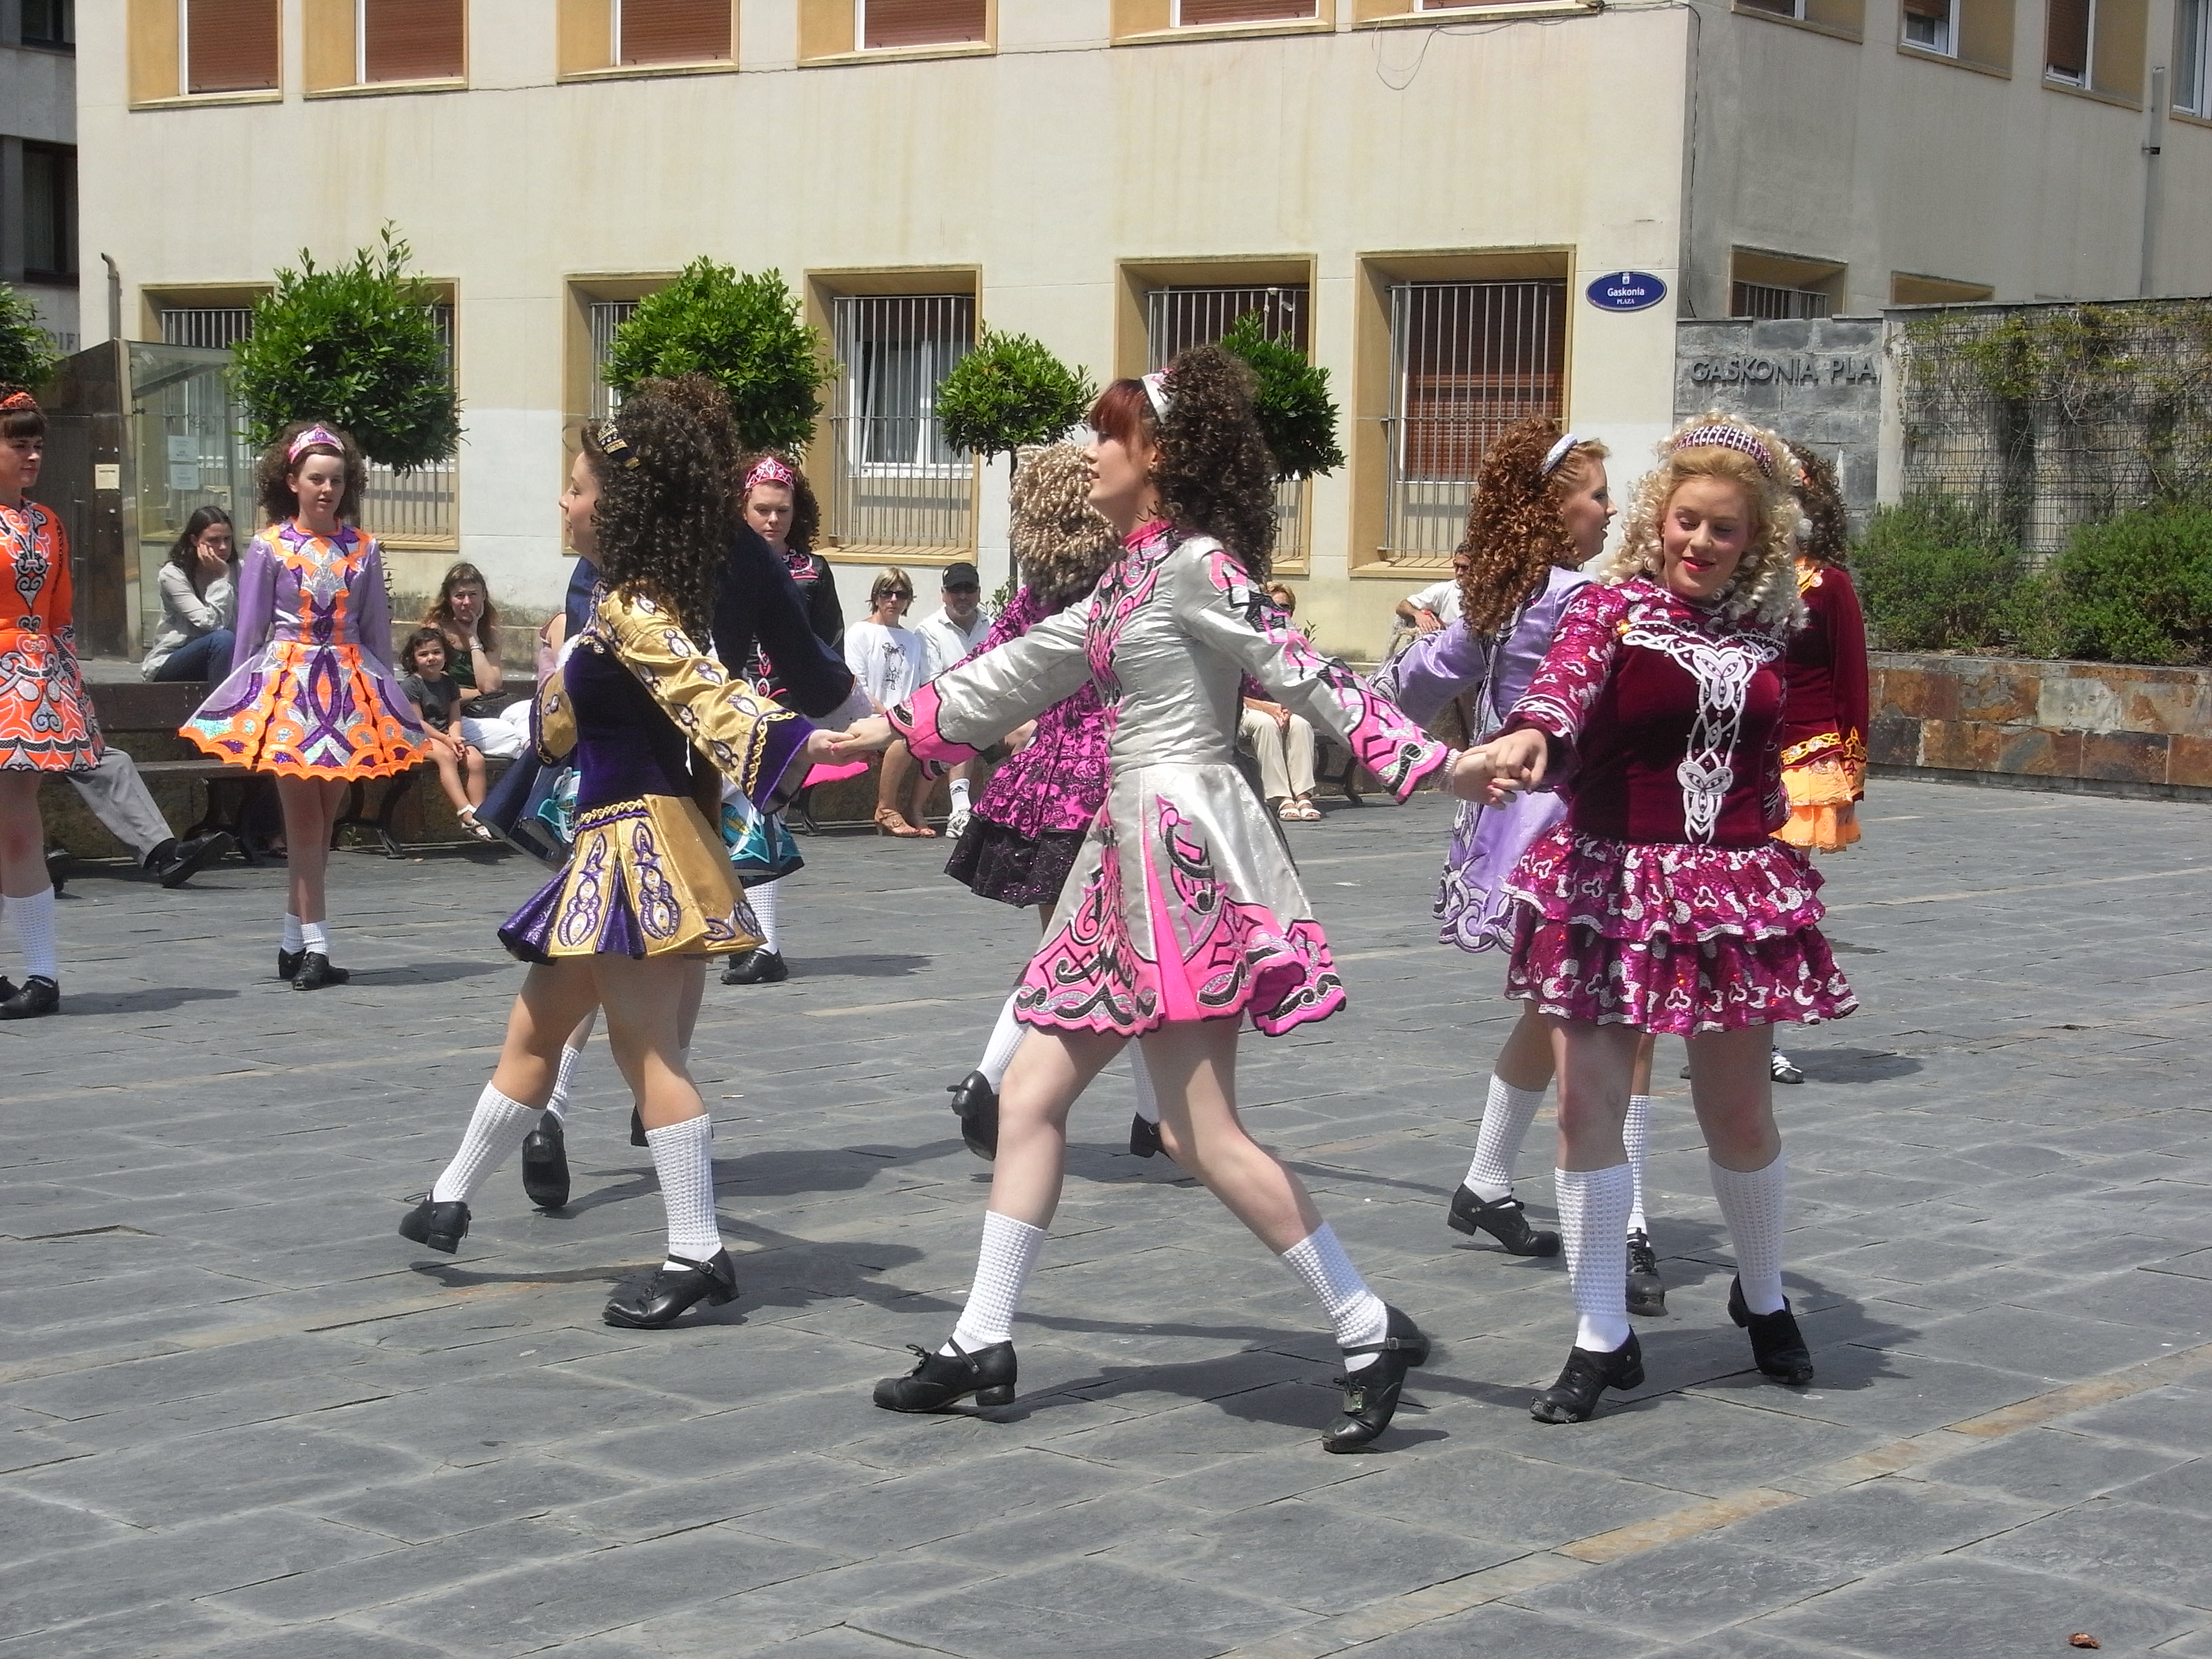 El grupo de Irlanda bailando en la plaza Gascuña de Donostia